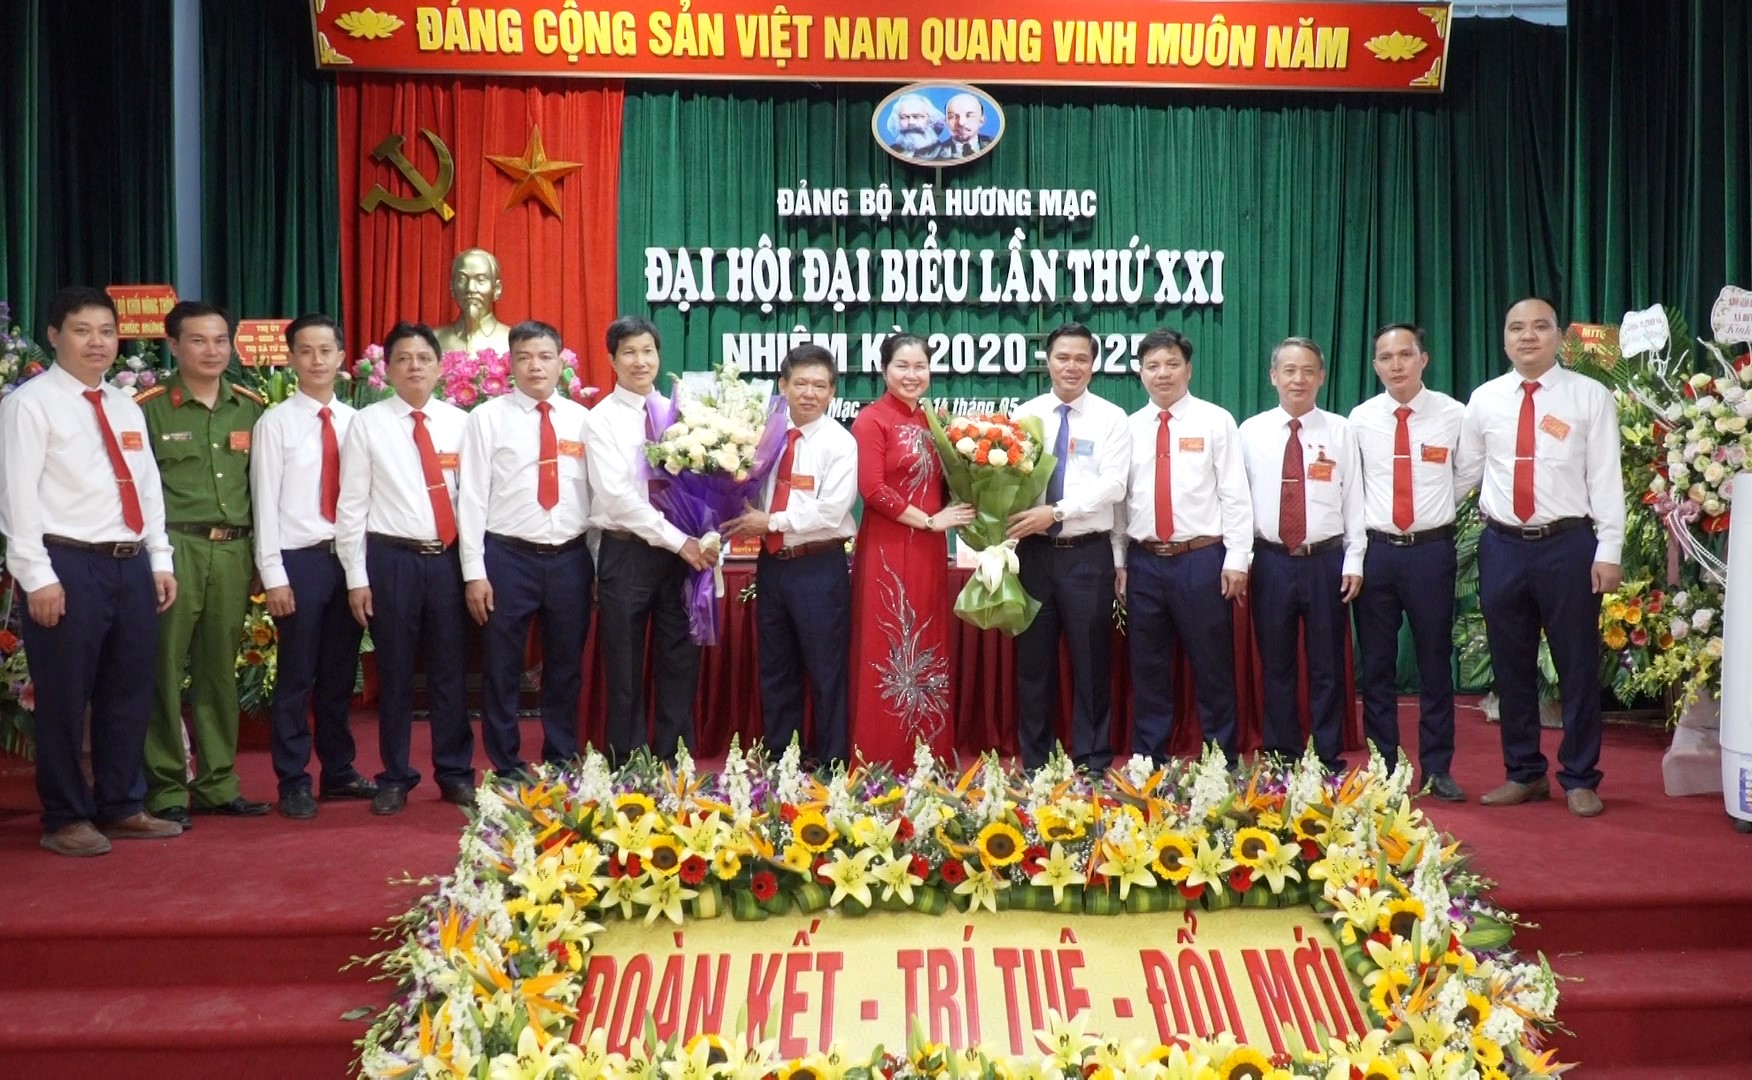 Đại hội đại biểu Đảng bộ xã Hương Mạc lần thứ 21 nhiệm kỳ 2020 - 2025